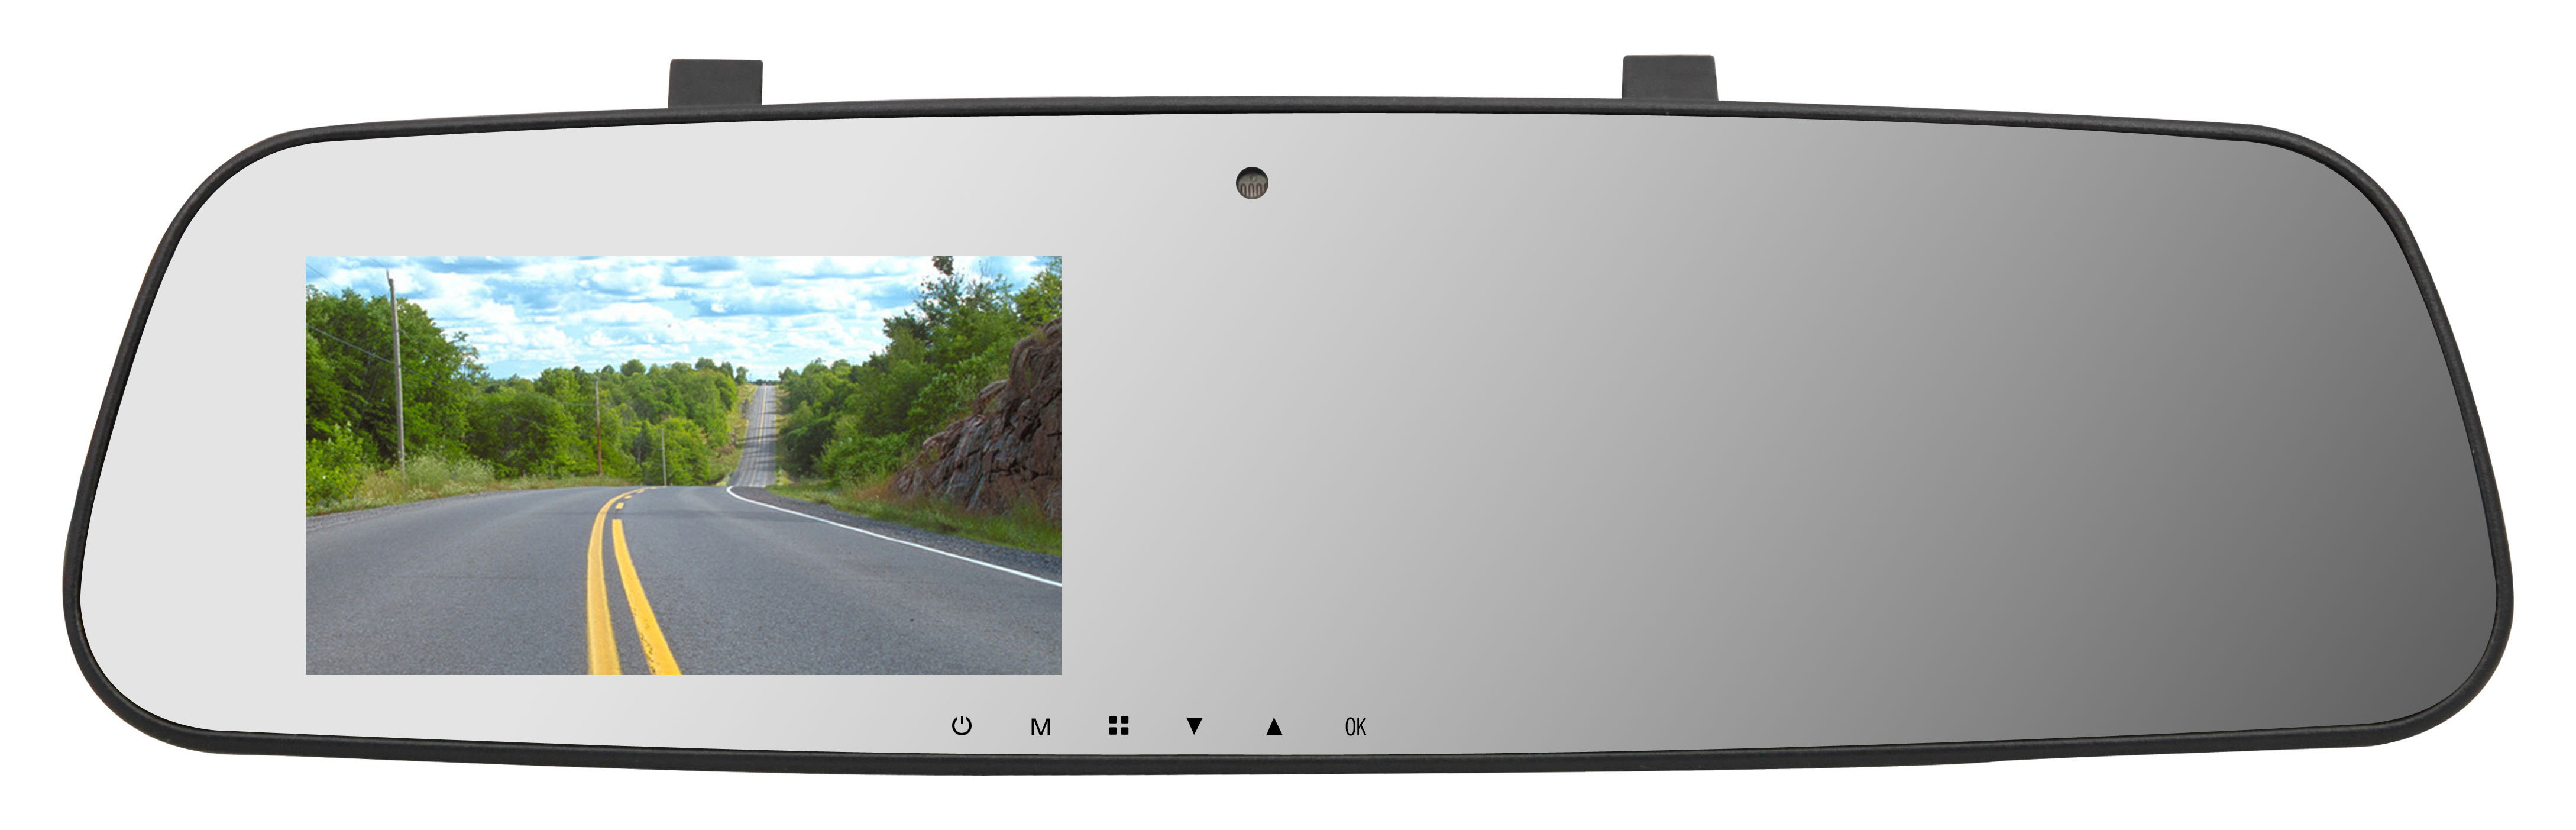 Ecran rétroviseur TFT LCD 11cm 4.5 pouces Bluetooth avec caméra enregistreuse DVR 1080 FULL HD